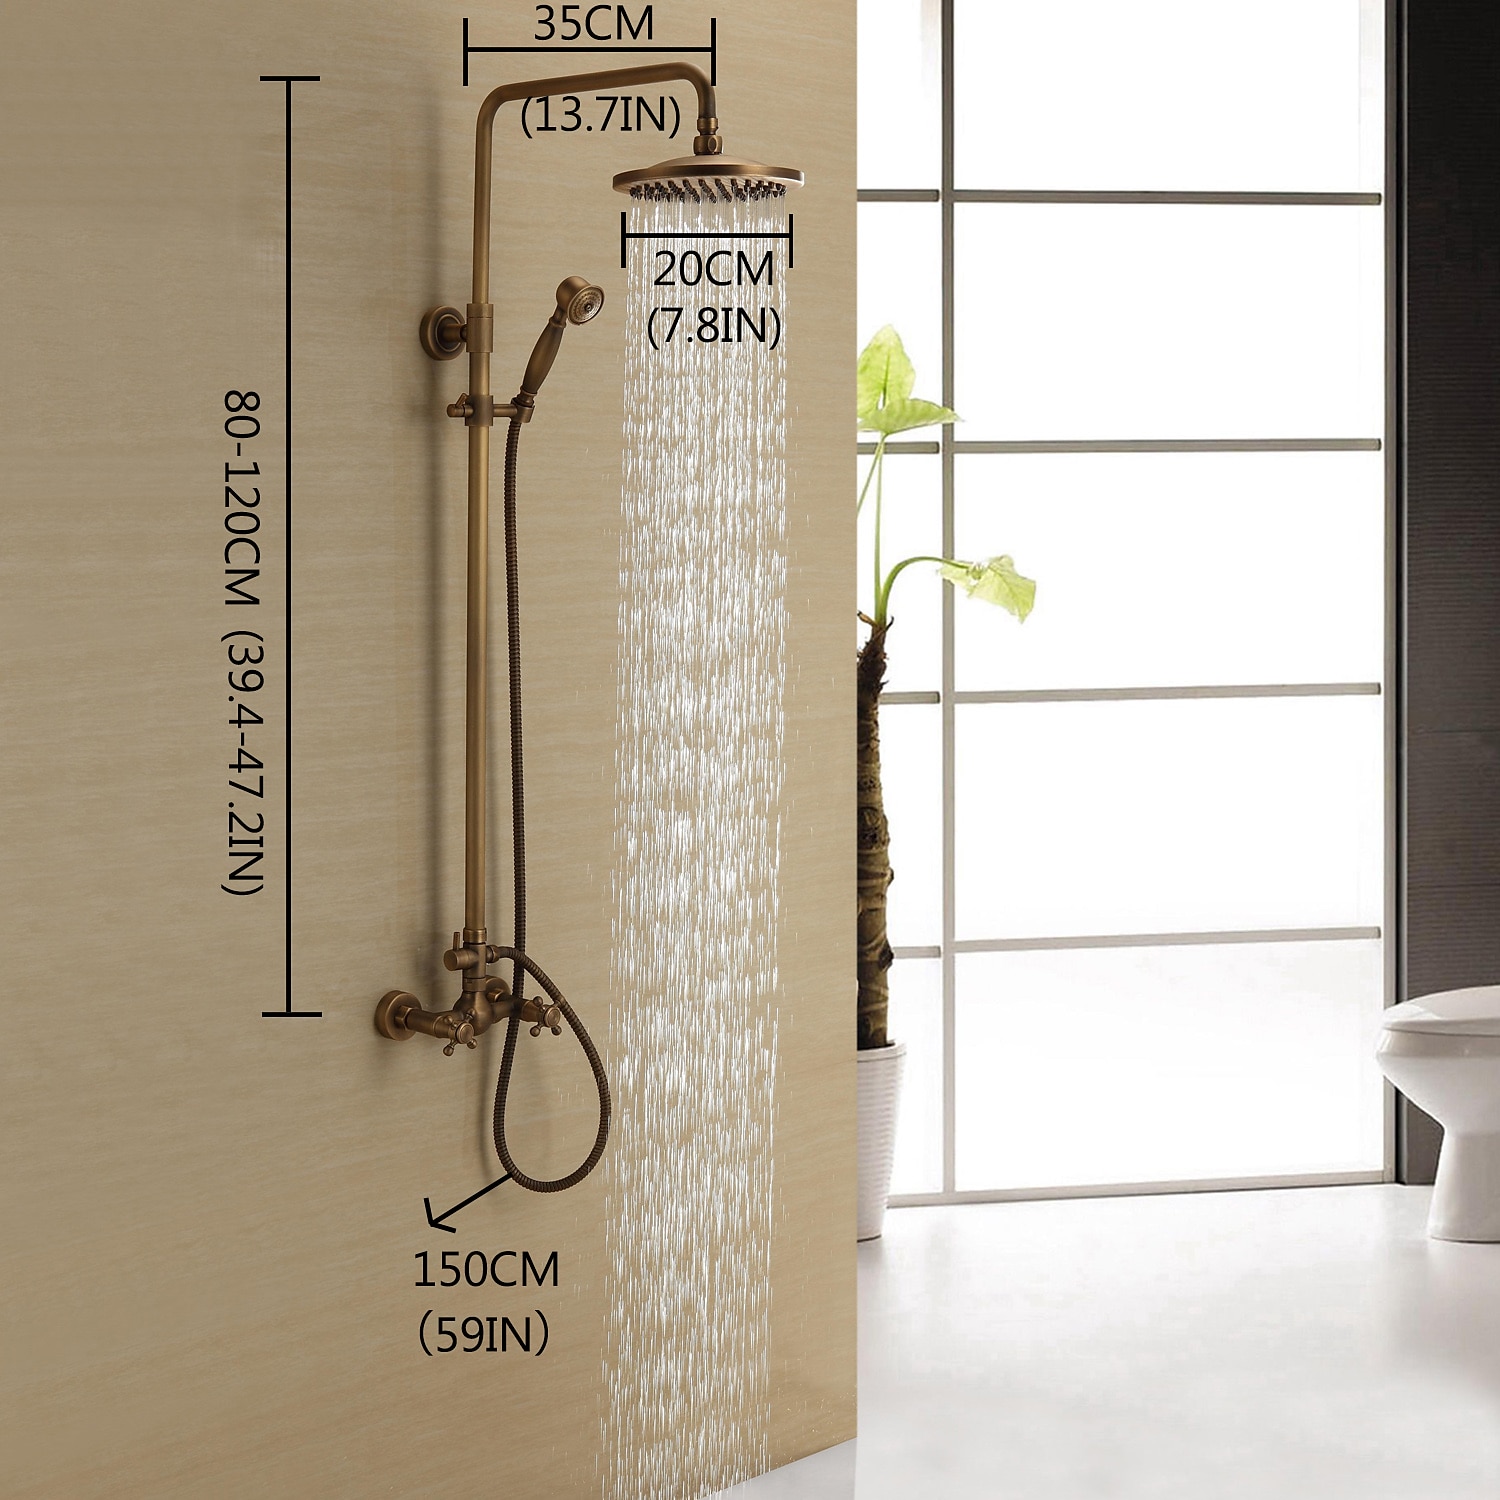 Rainfall Shower Fixture Wall Mount Bathroom Shower Faucet